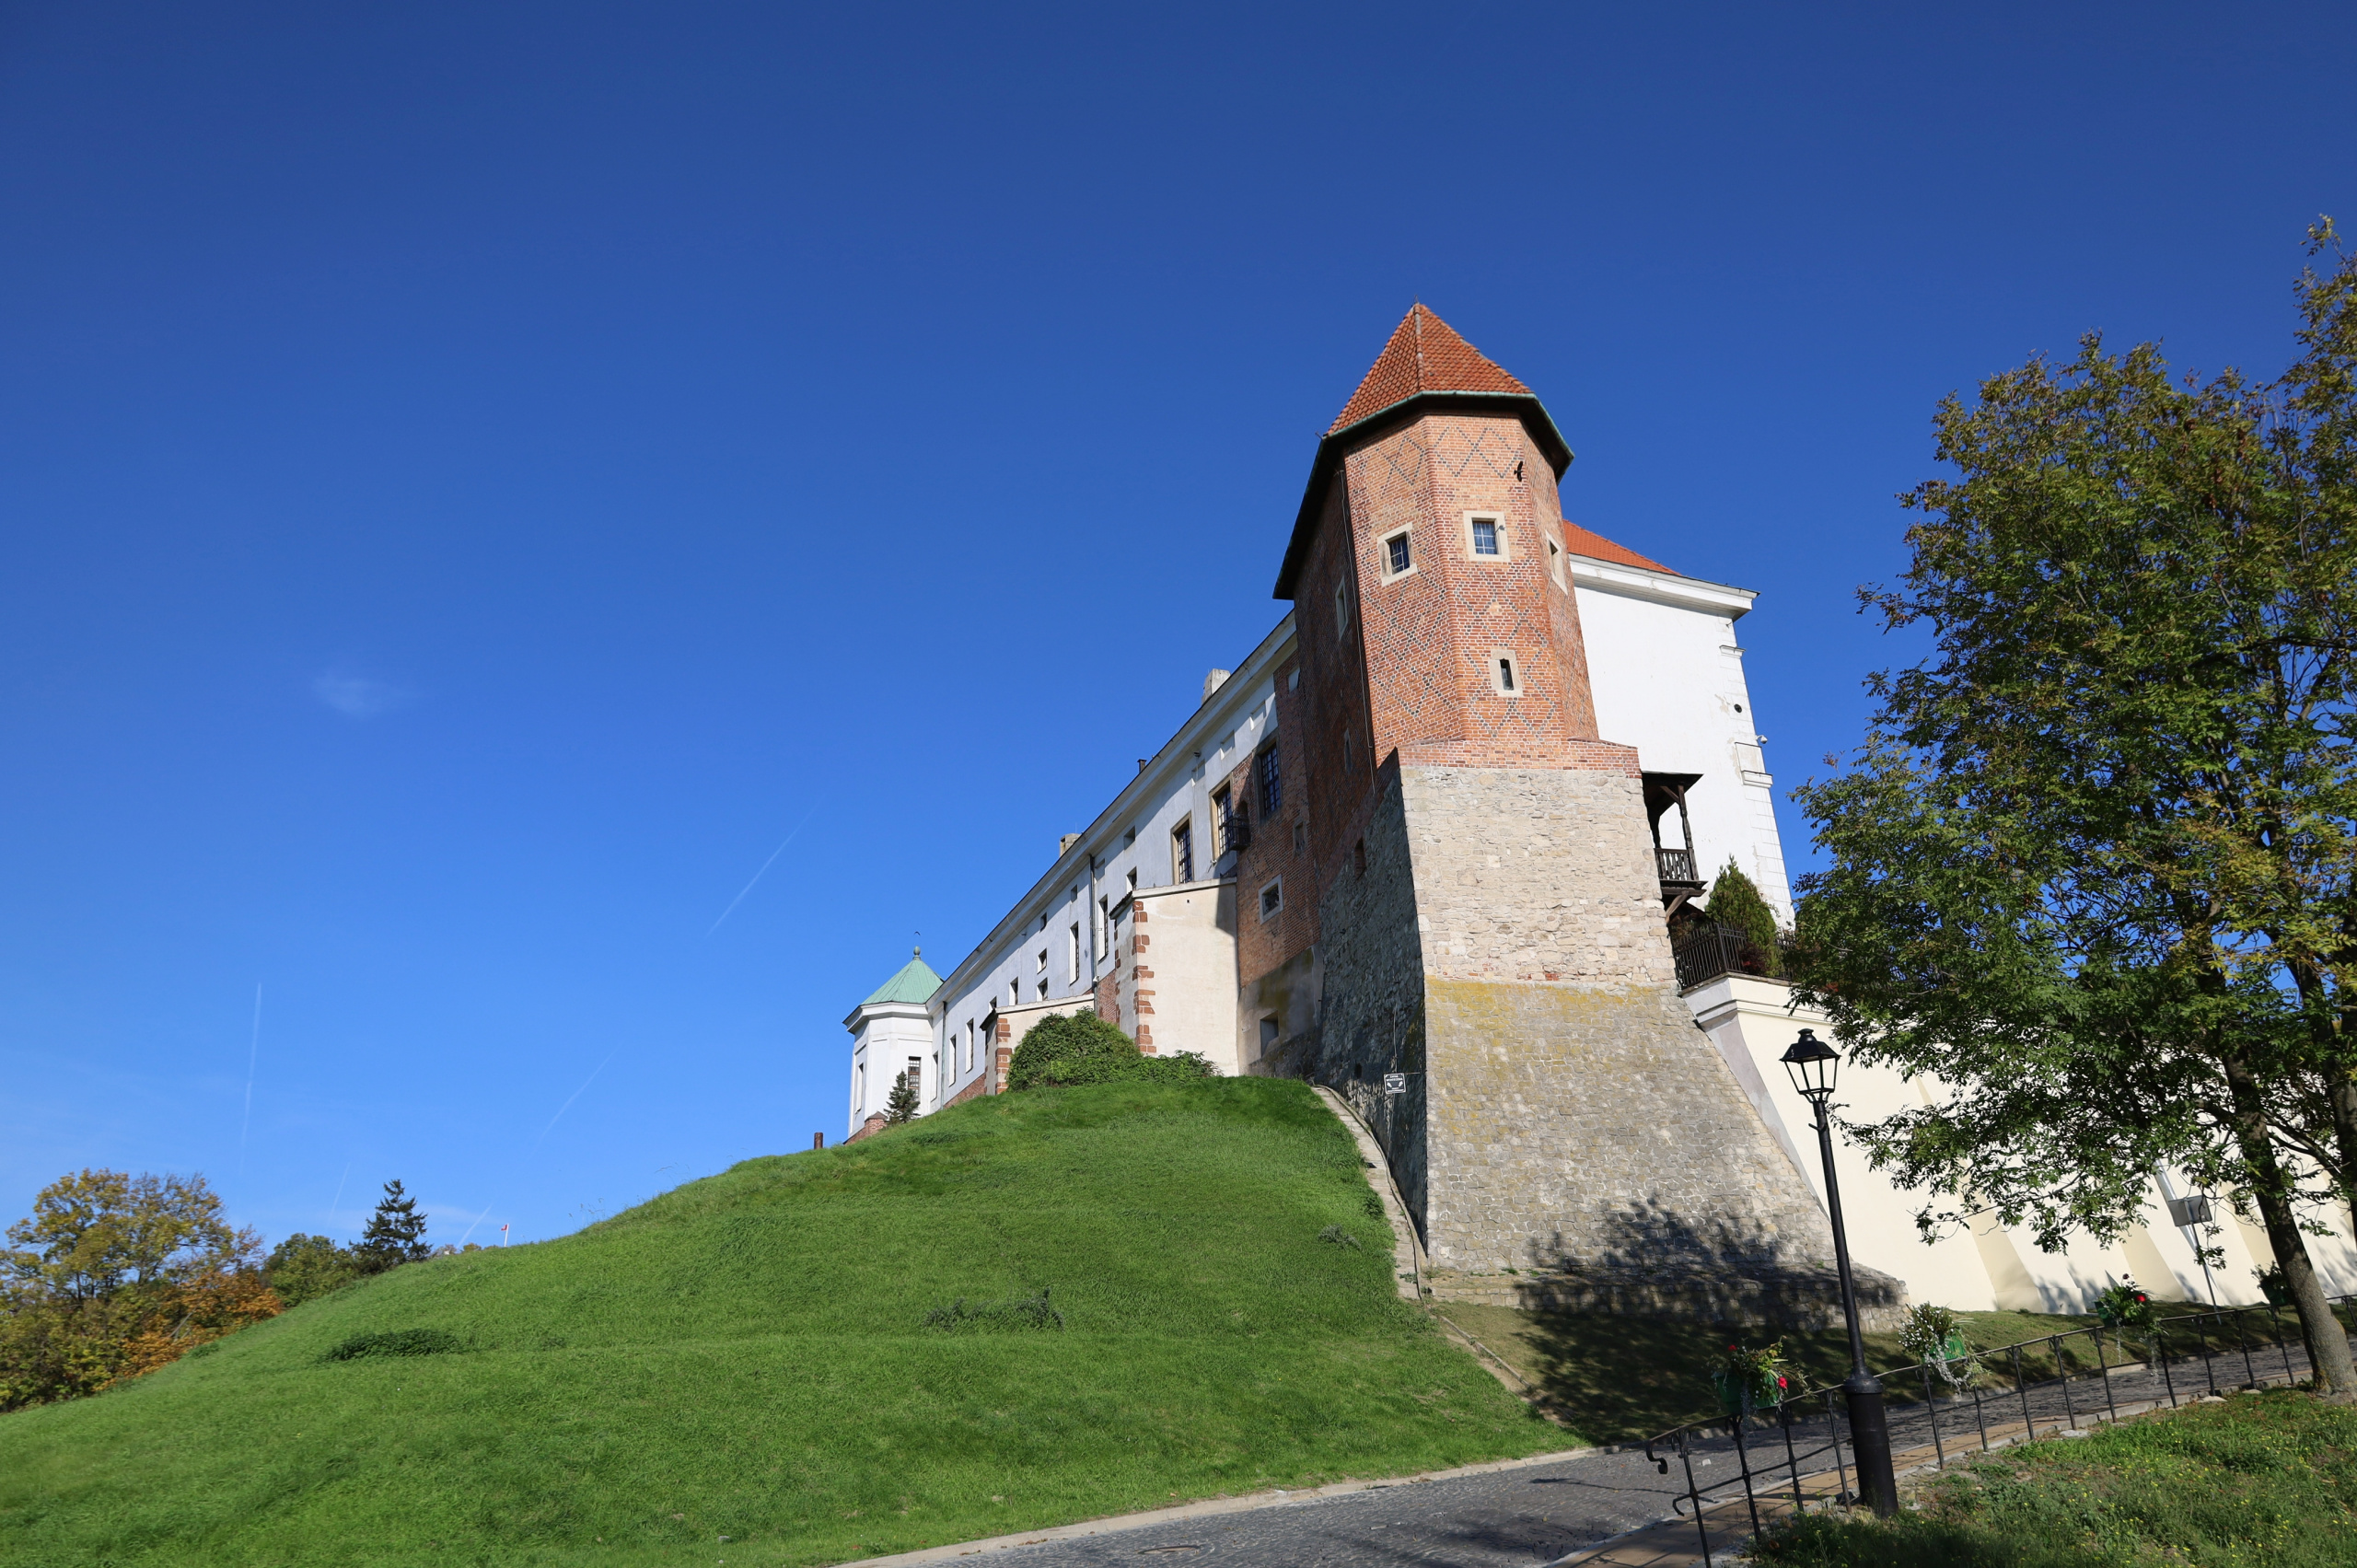 Zamek w Sandomierzu w barwach polskiej 